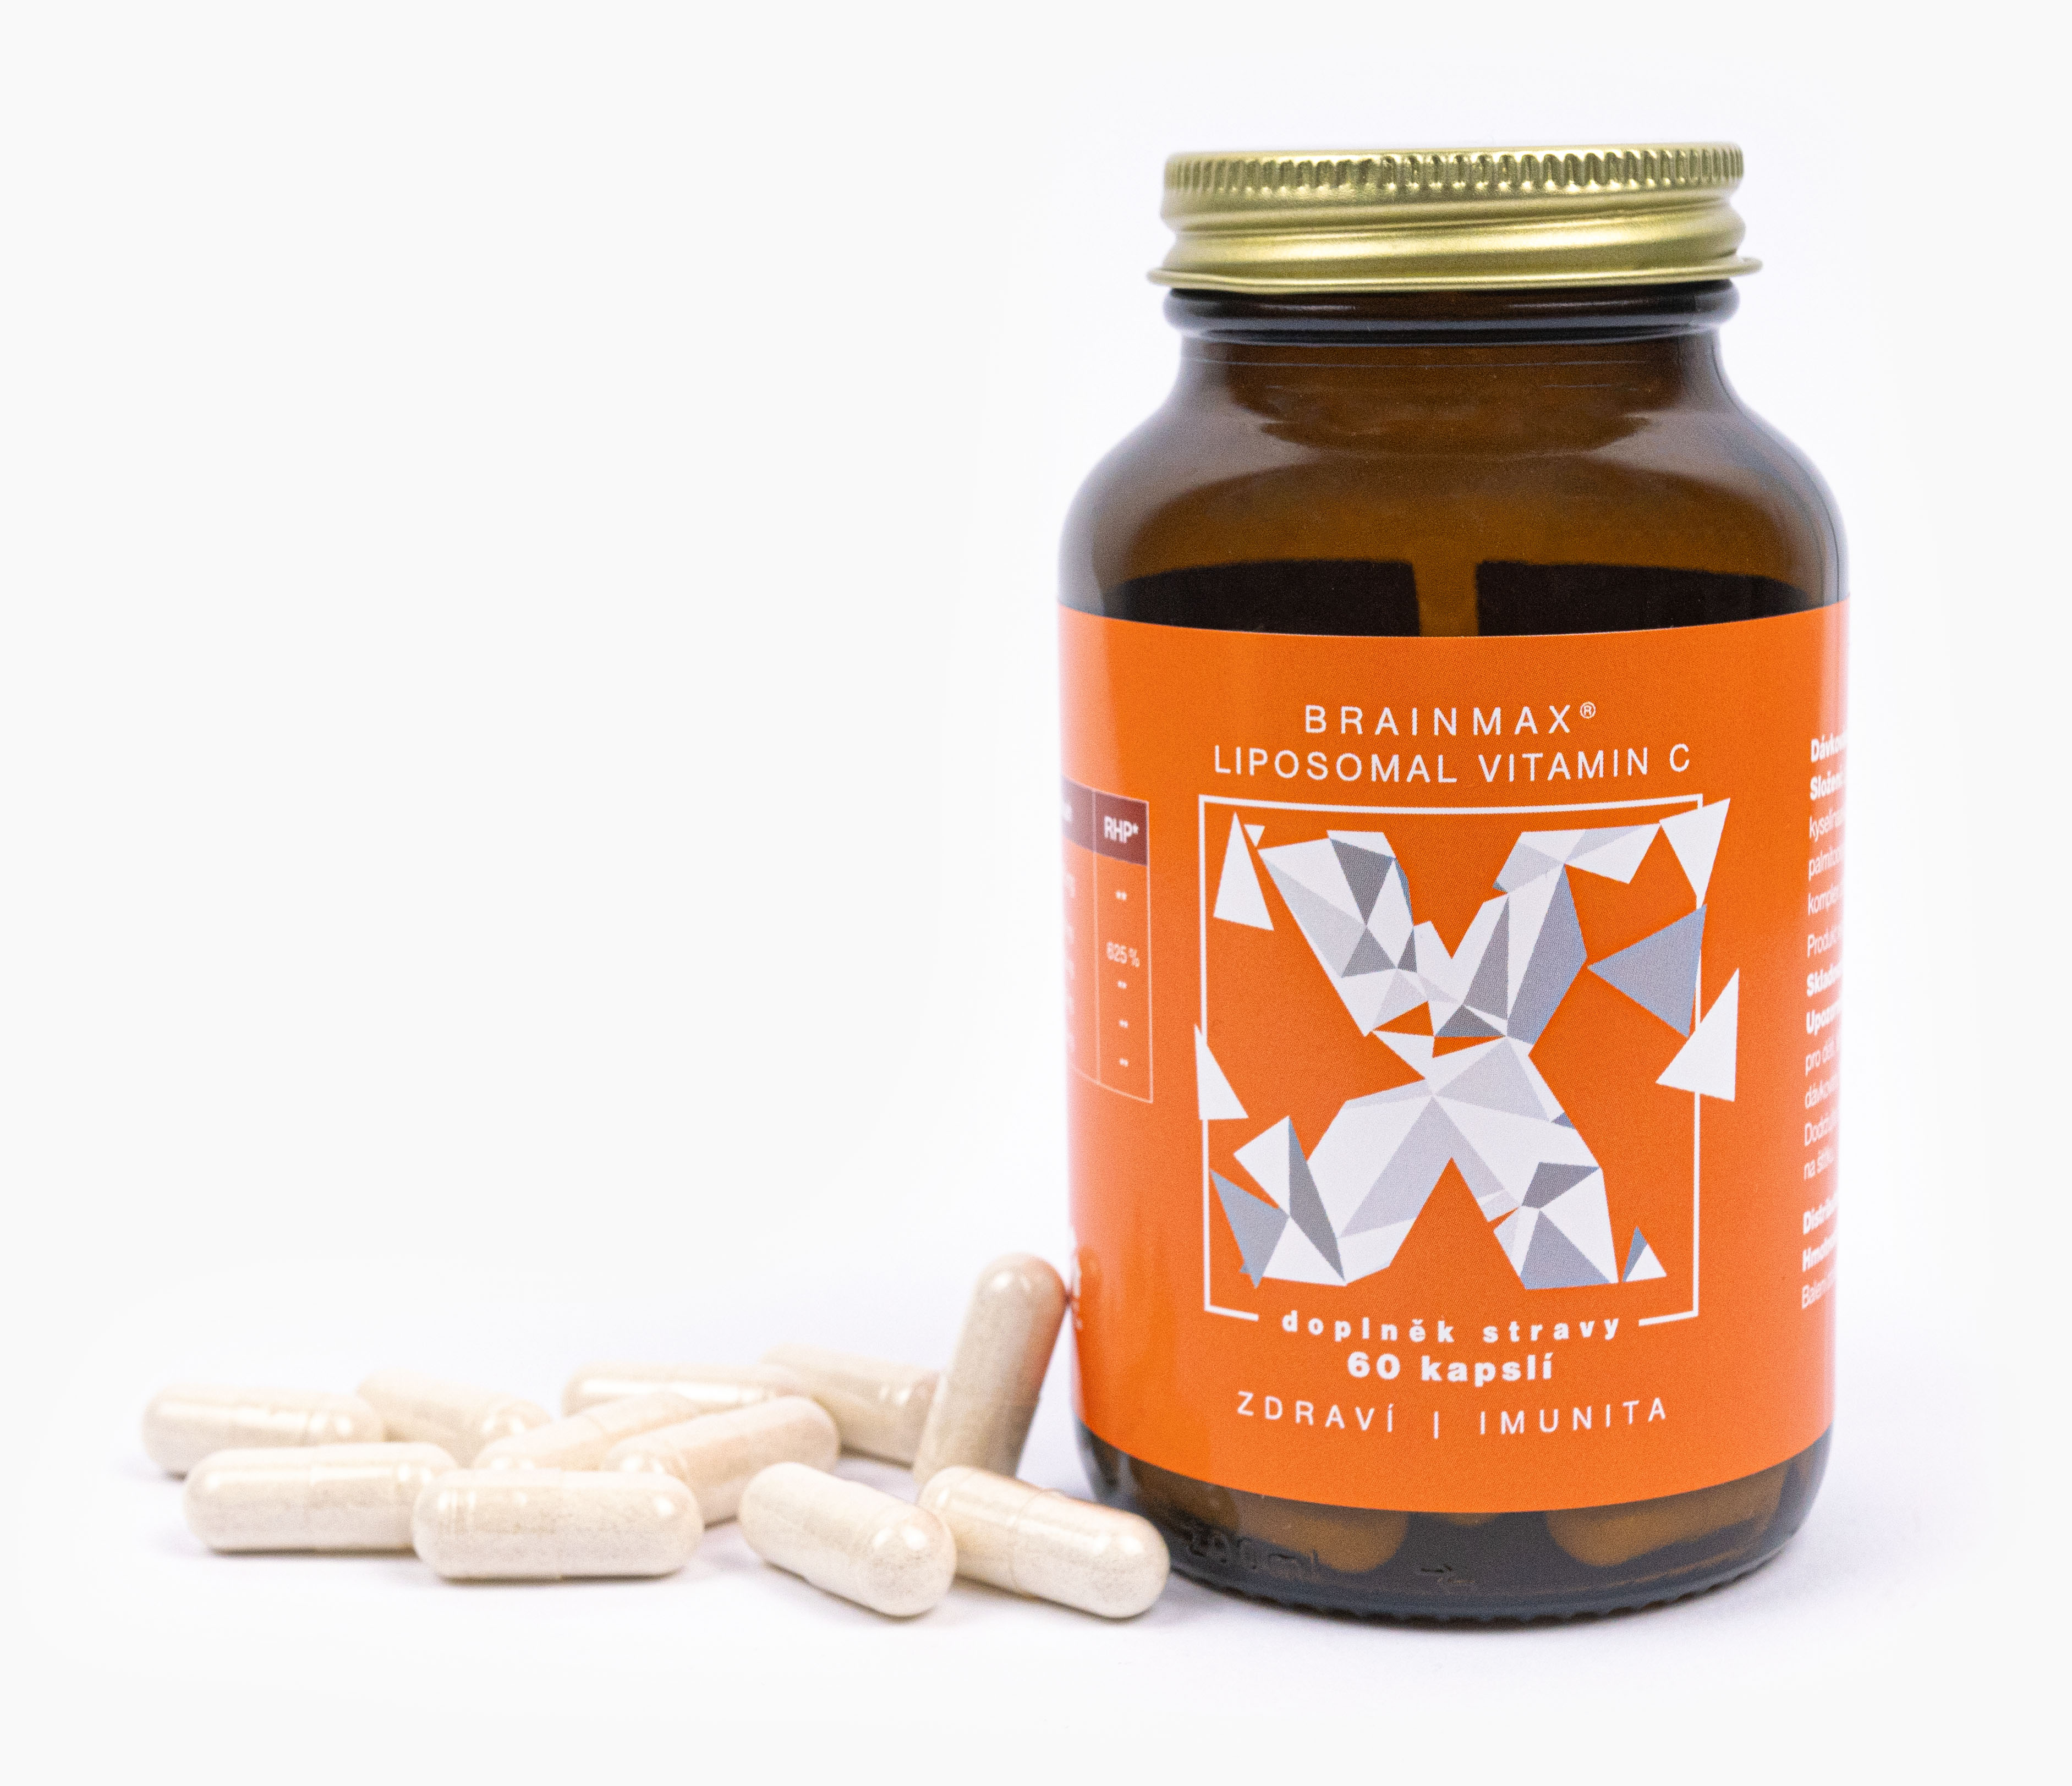 BrainMax liposzomális C-vitamin, liposzomális C-vitamin, 500 mg, 60 növényi kapszula